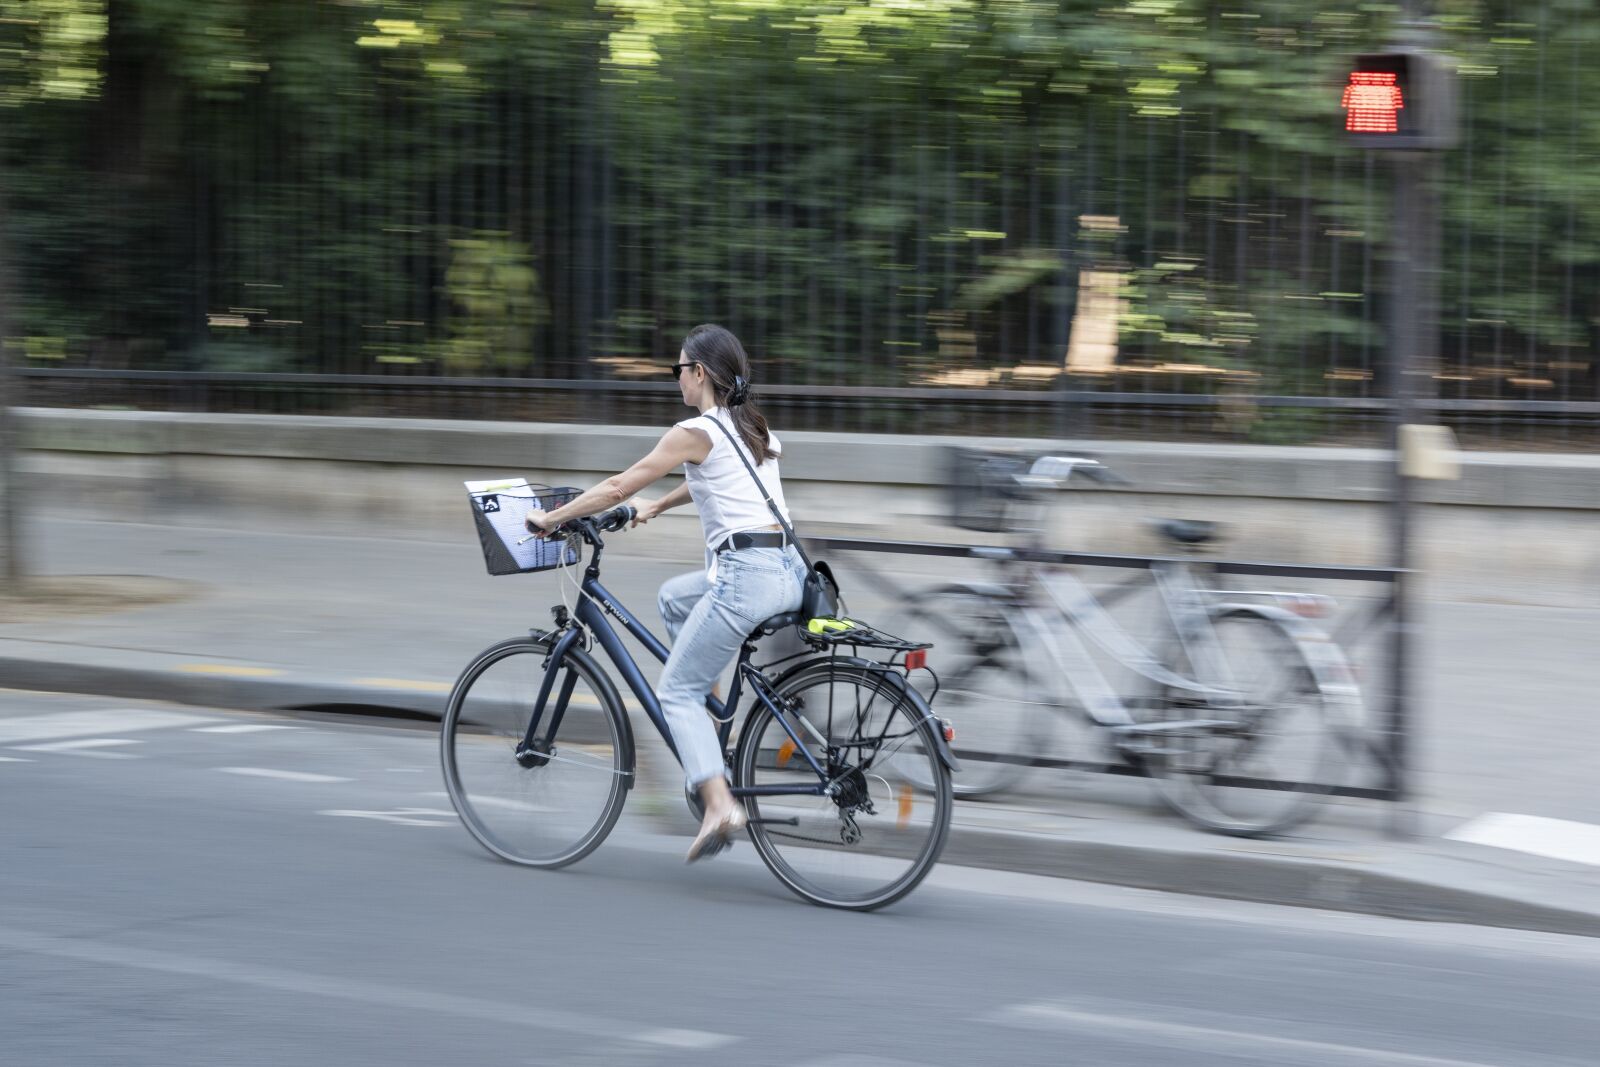 Nikon Z 50 sample photo. Bike, woman, cycling photography